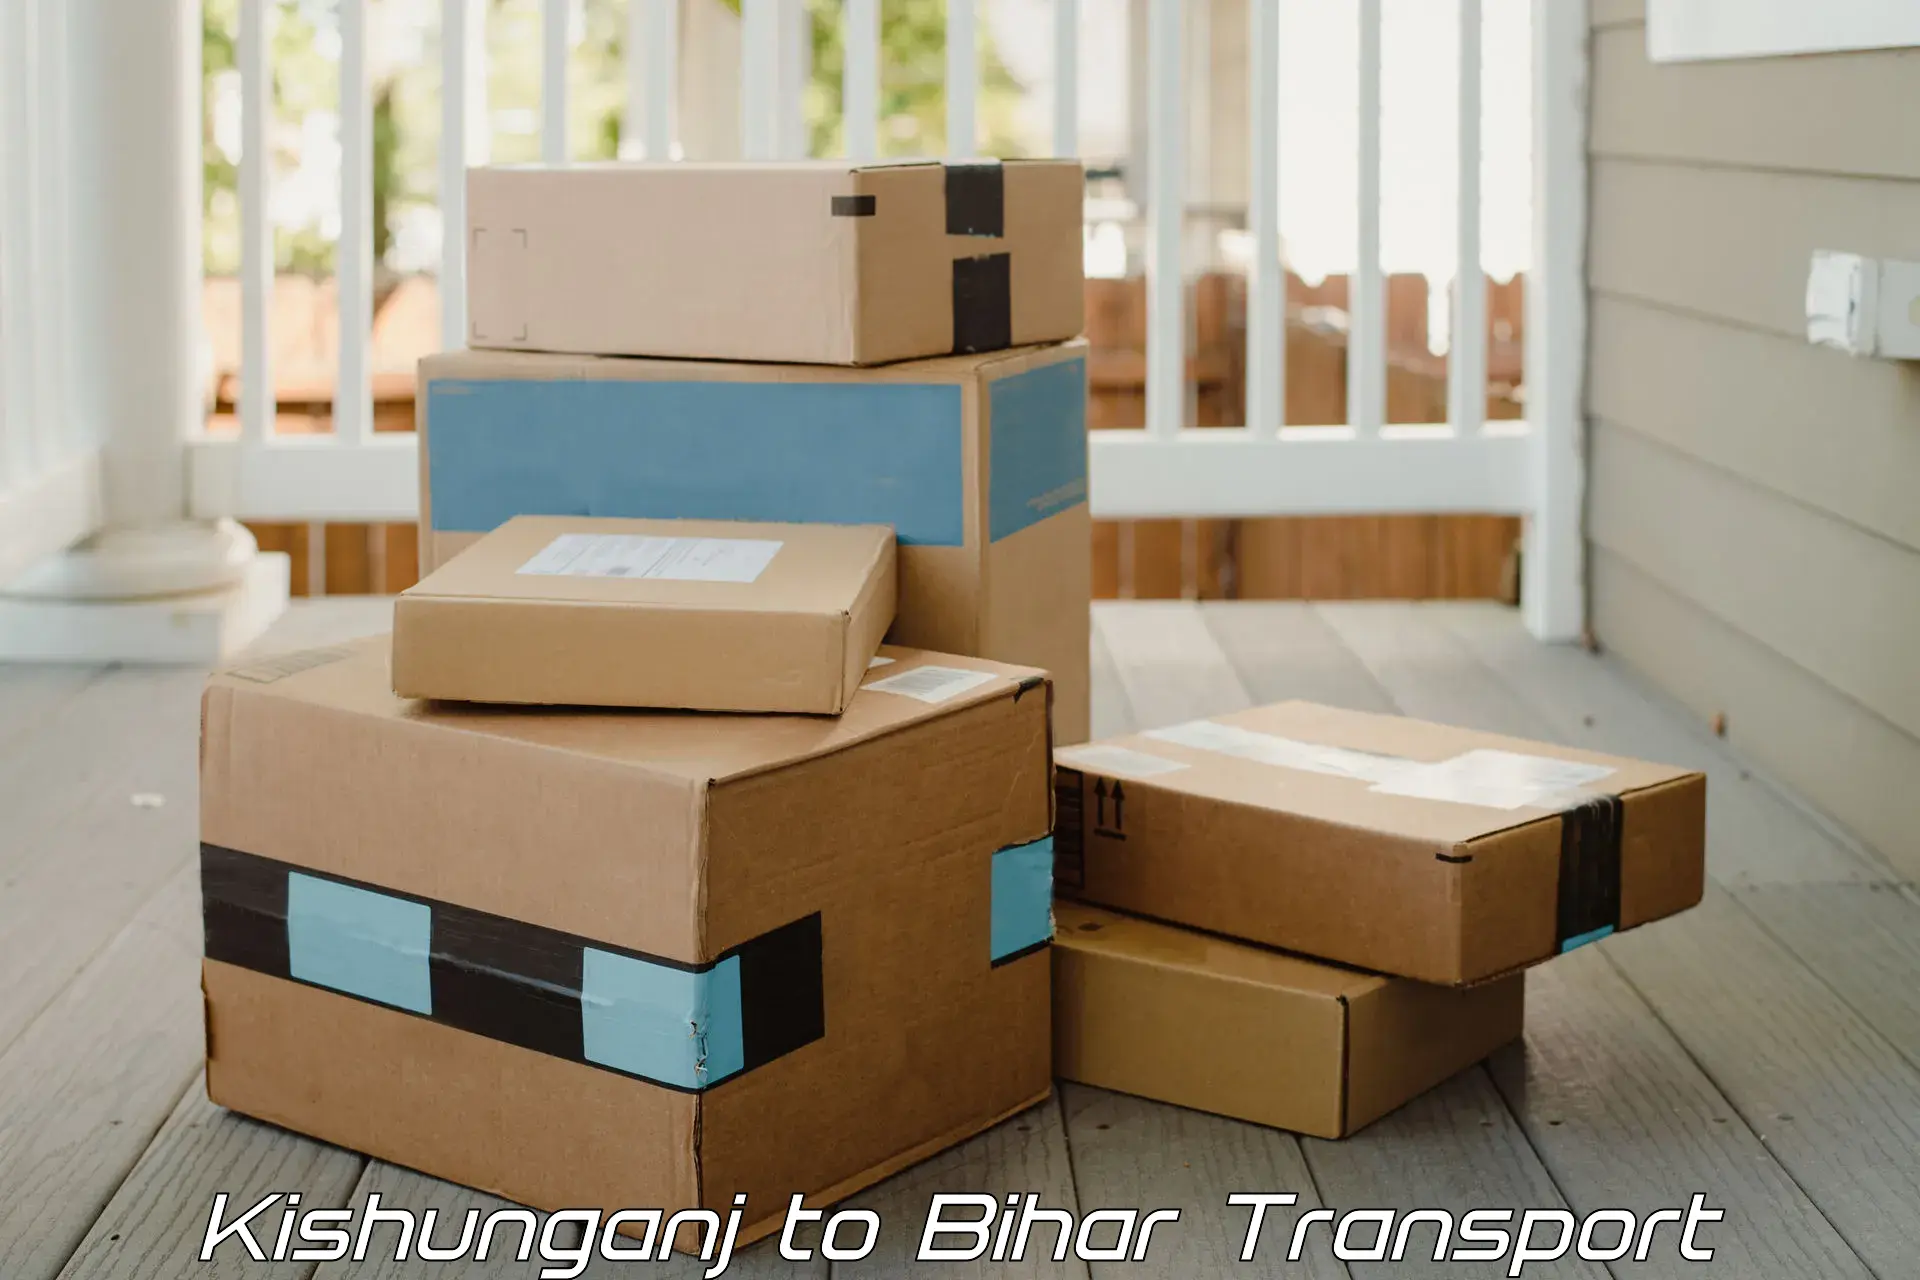 Package delivery services Kishunganj to Kishunganj